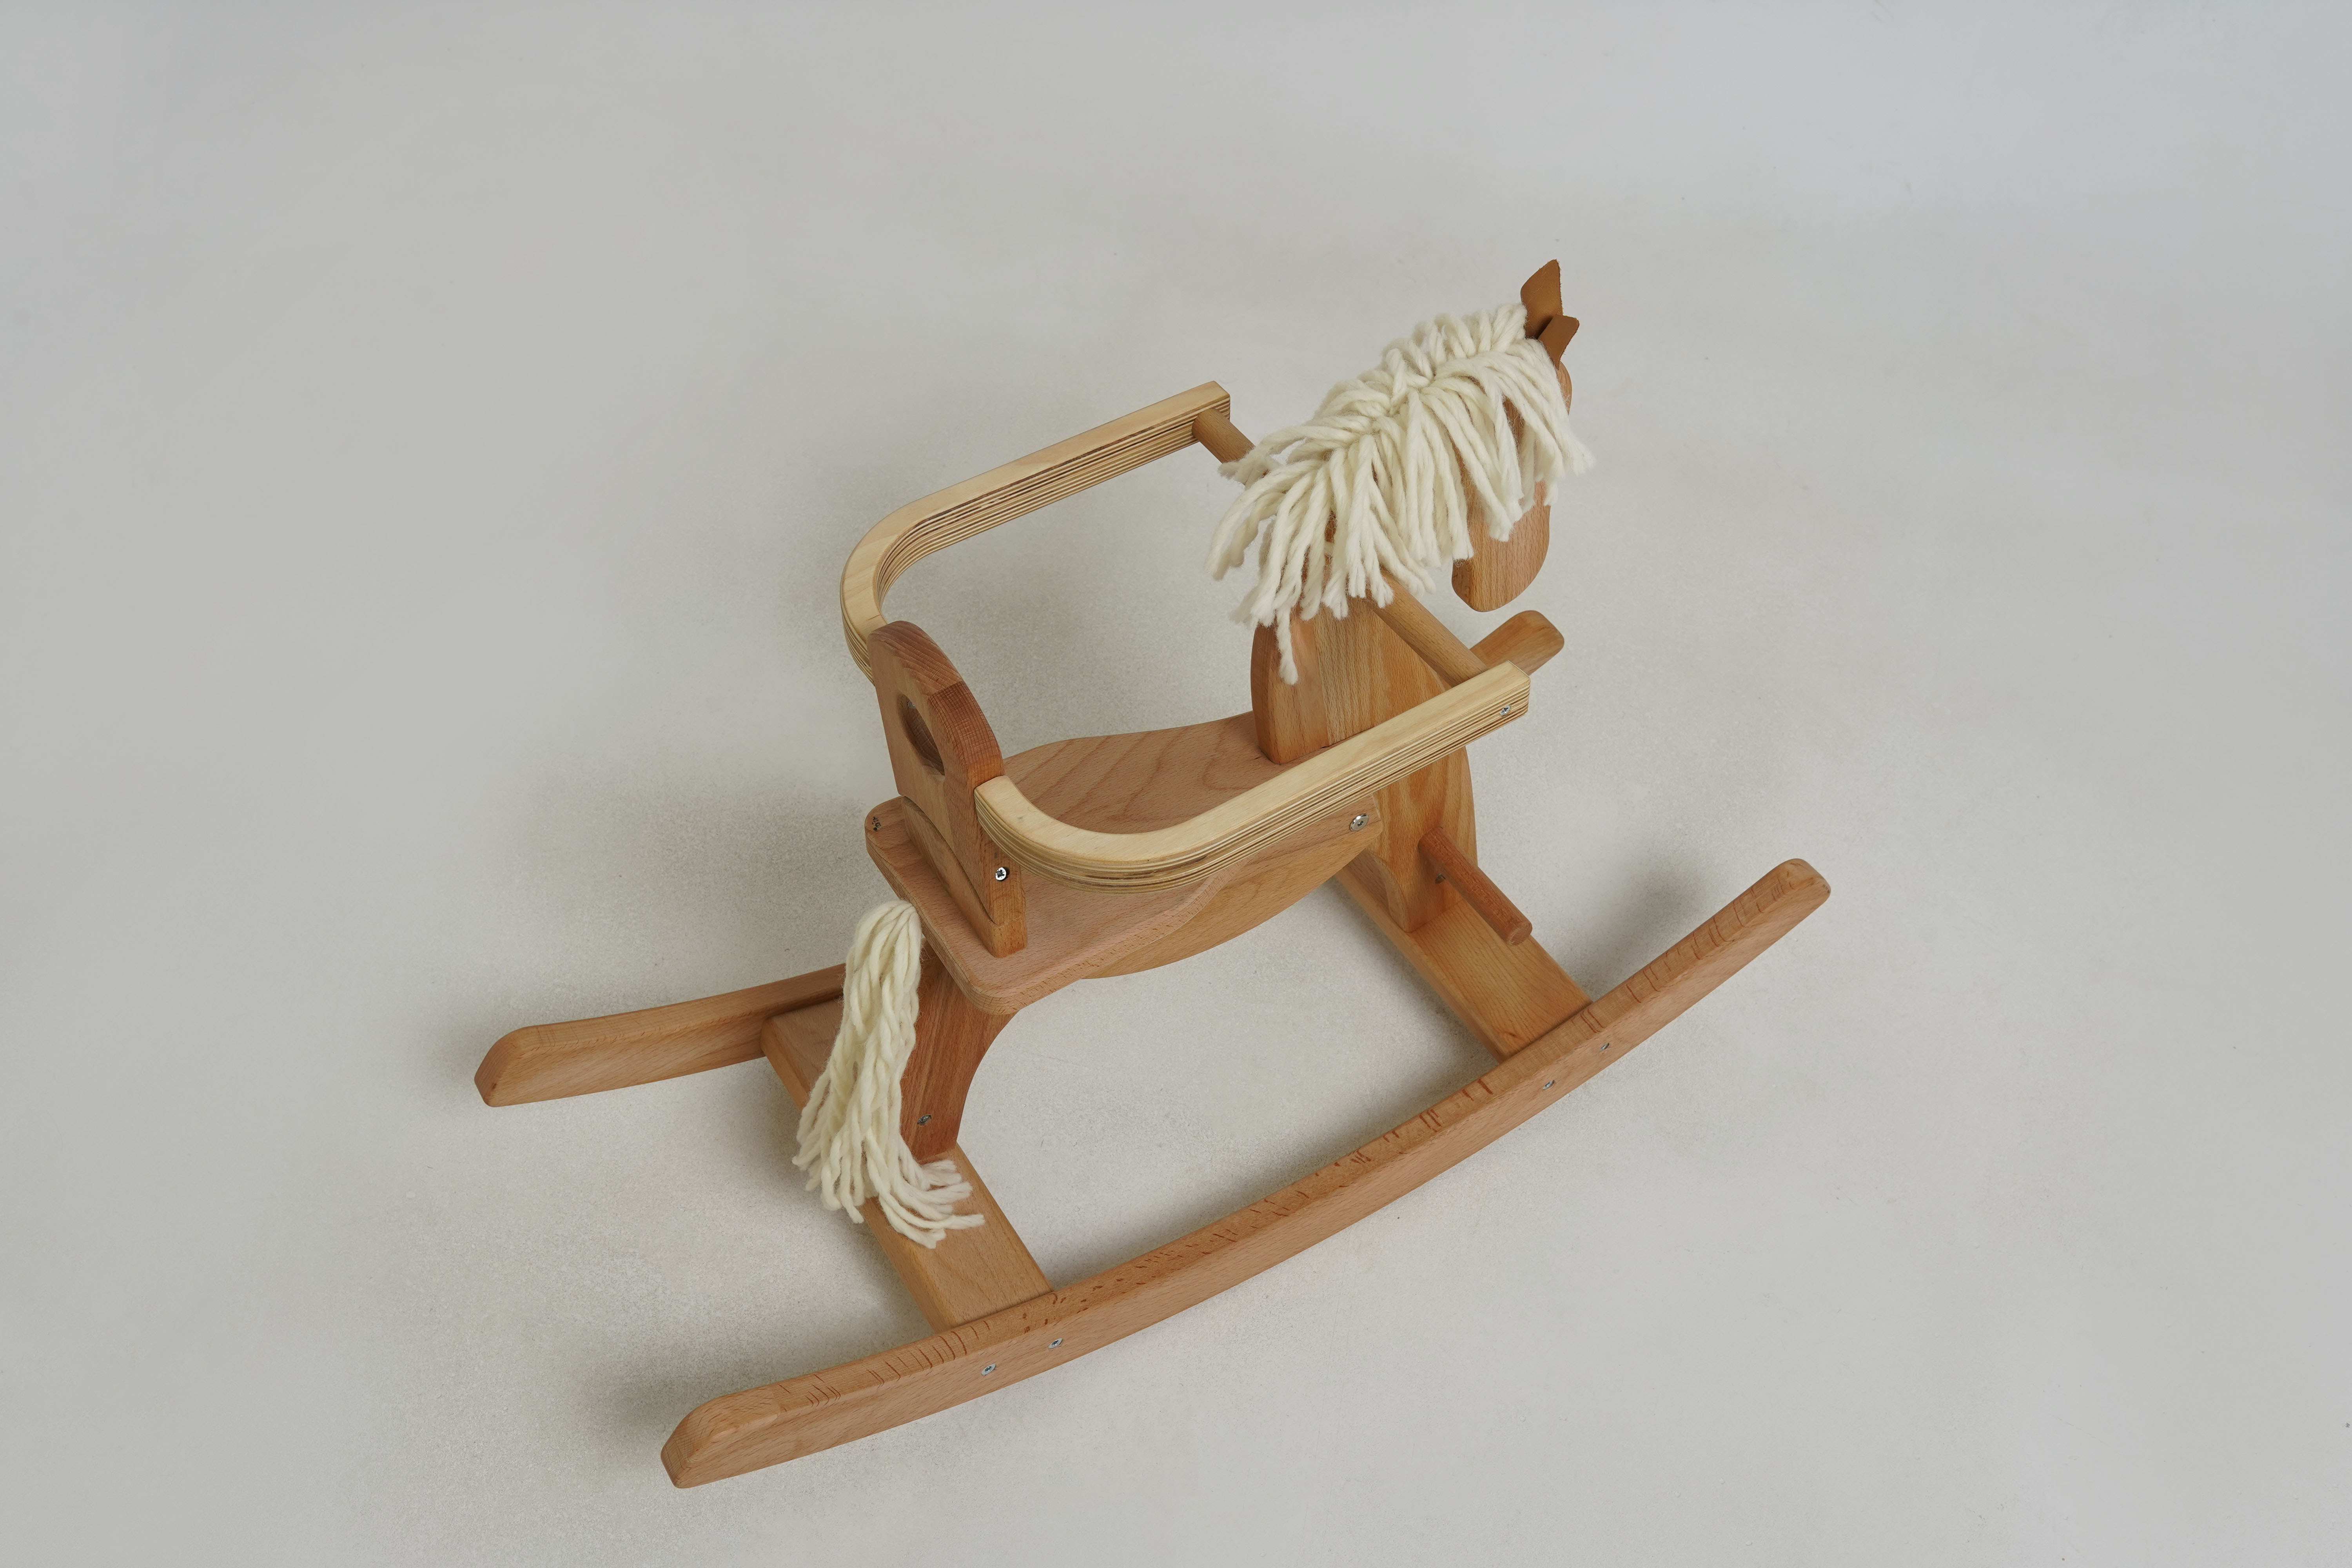 Wooden Rocking horse Emmy